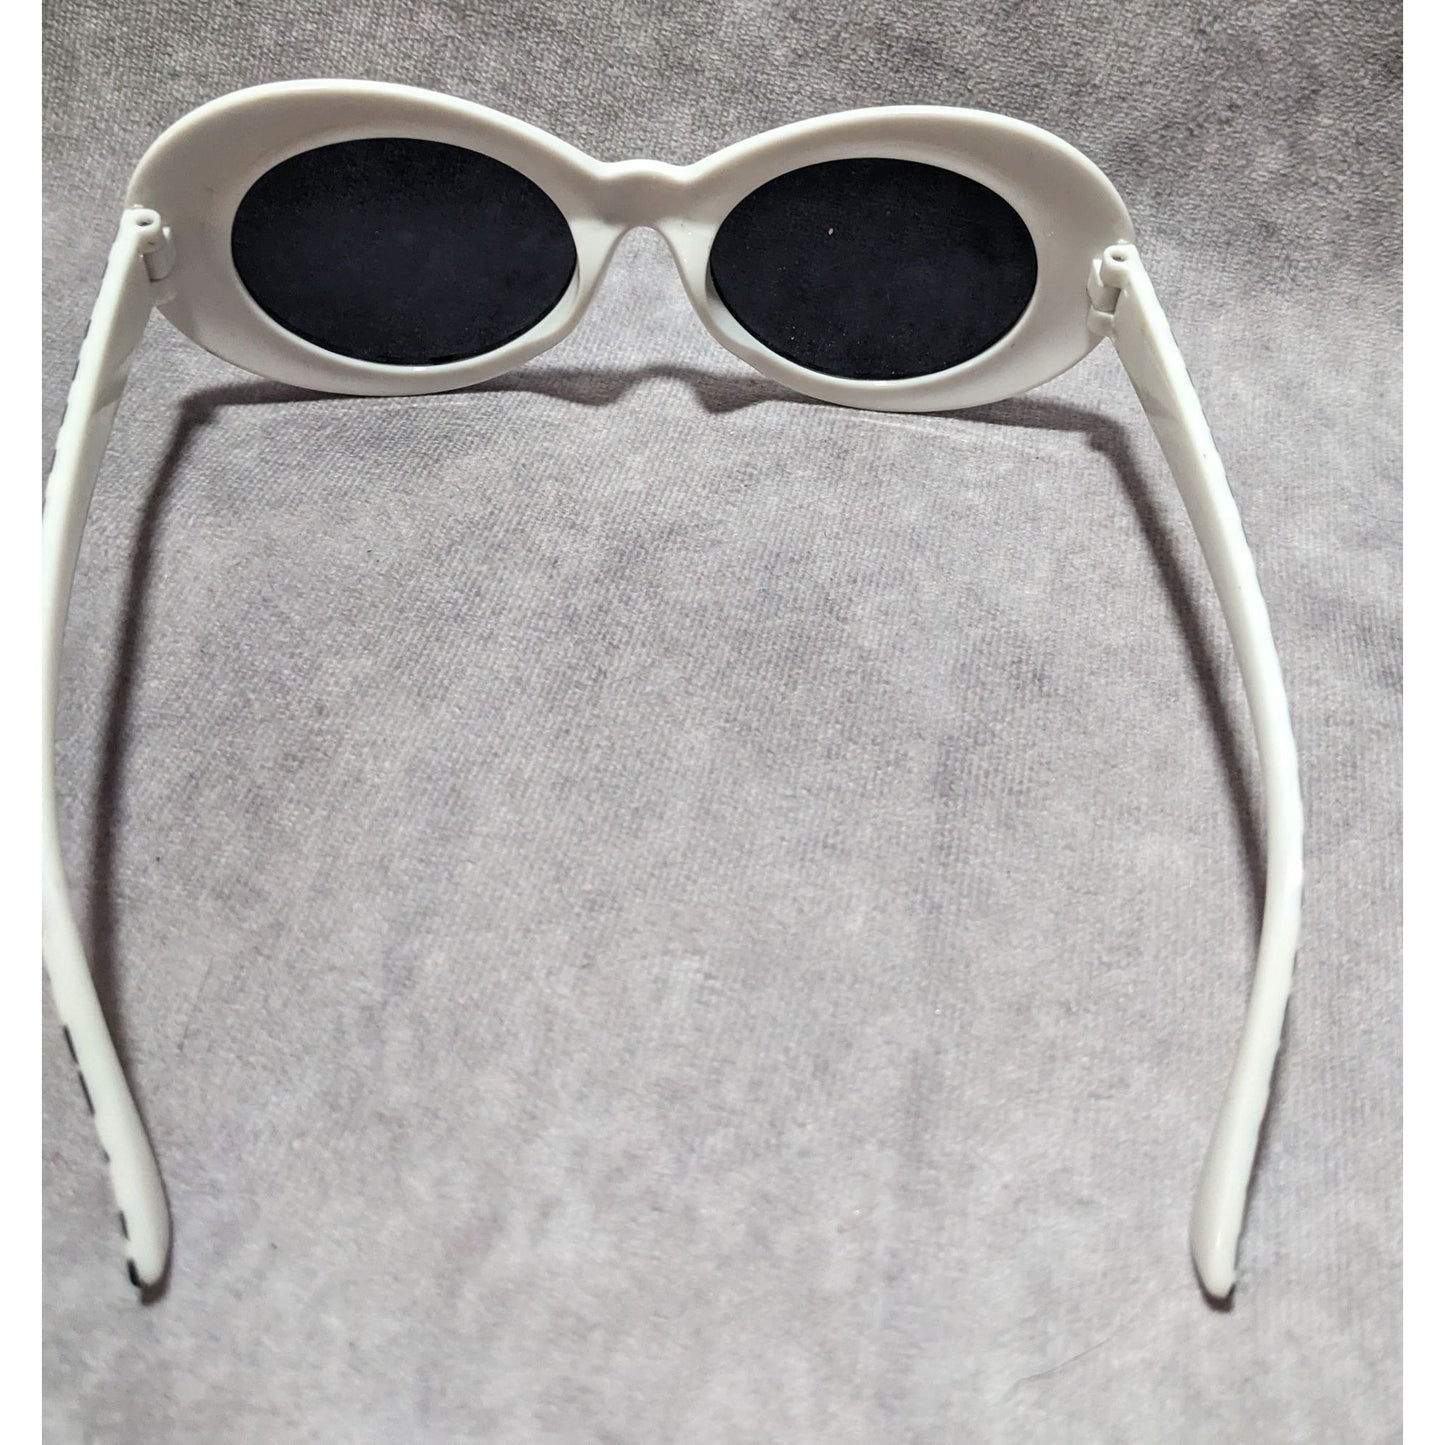 Retro Checkered Sunglasses